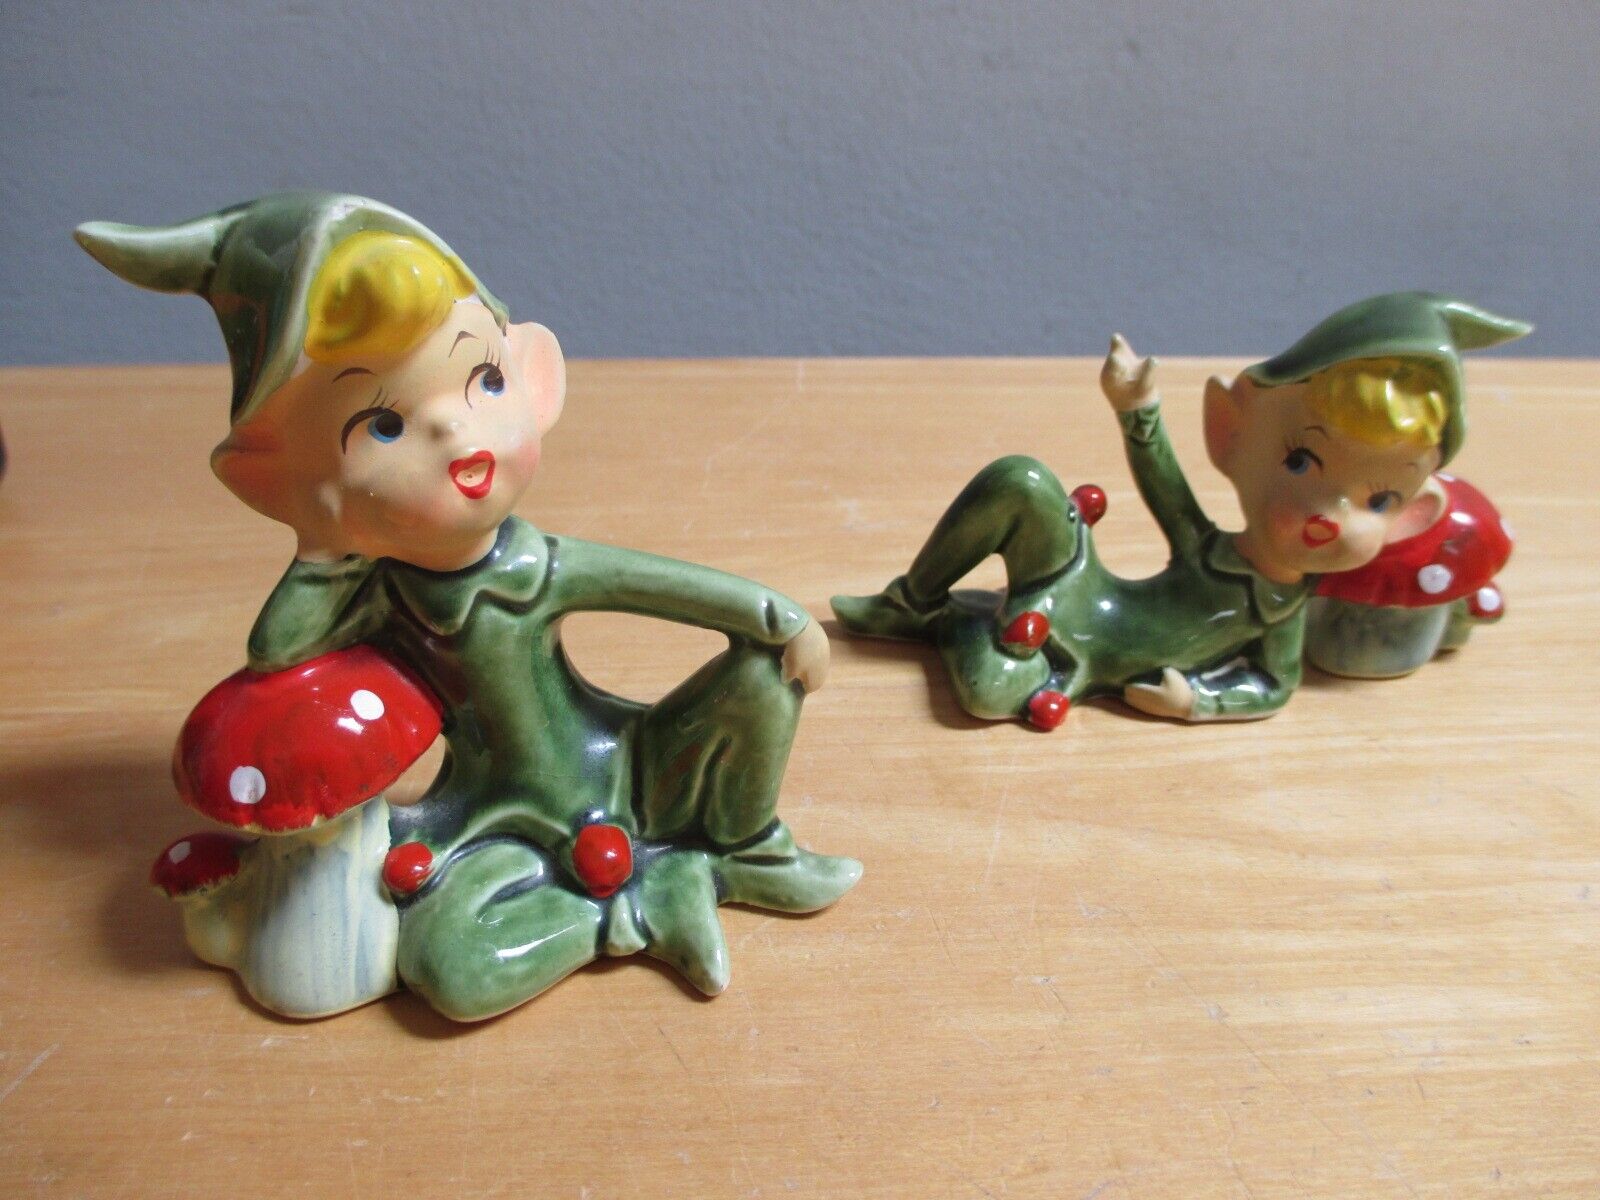 2 Lefton’s Ceramic Pixie Figurines Mushrooms Japan 4193